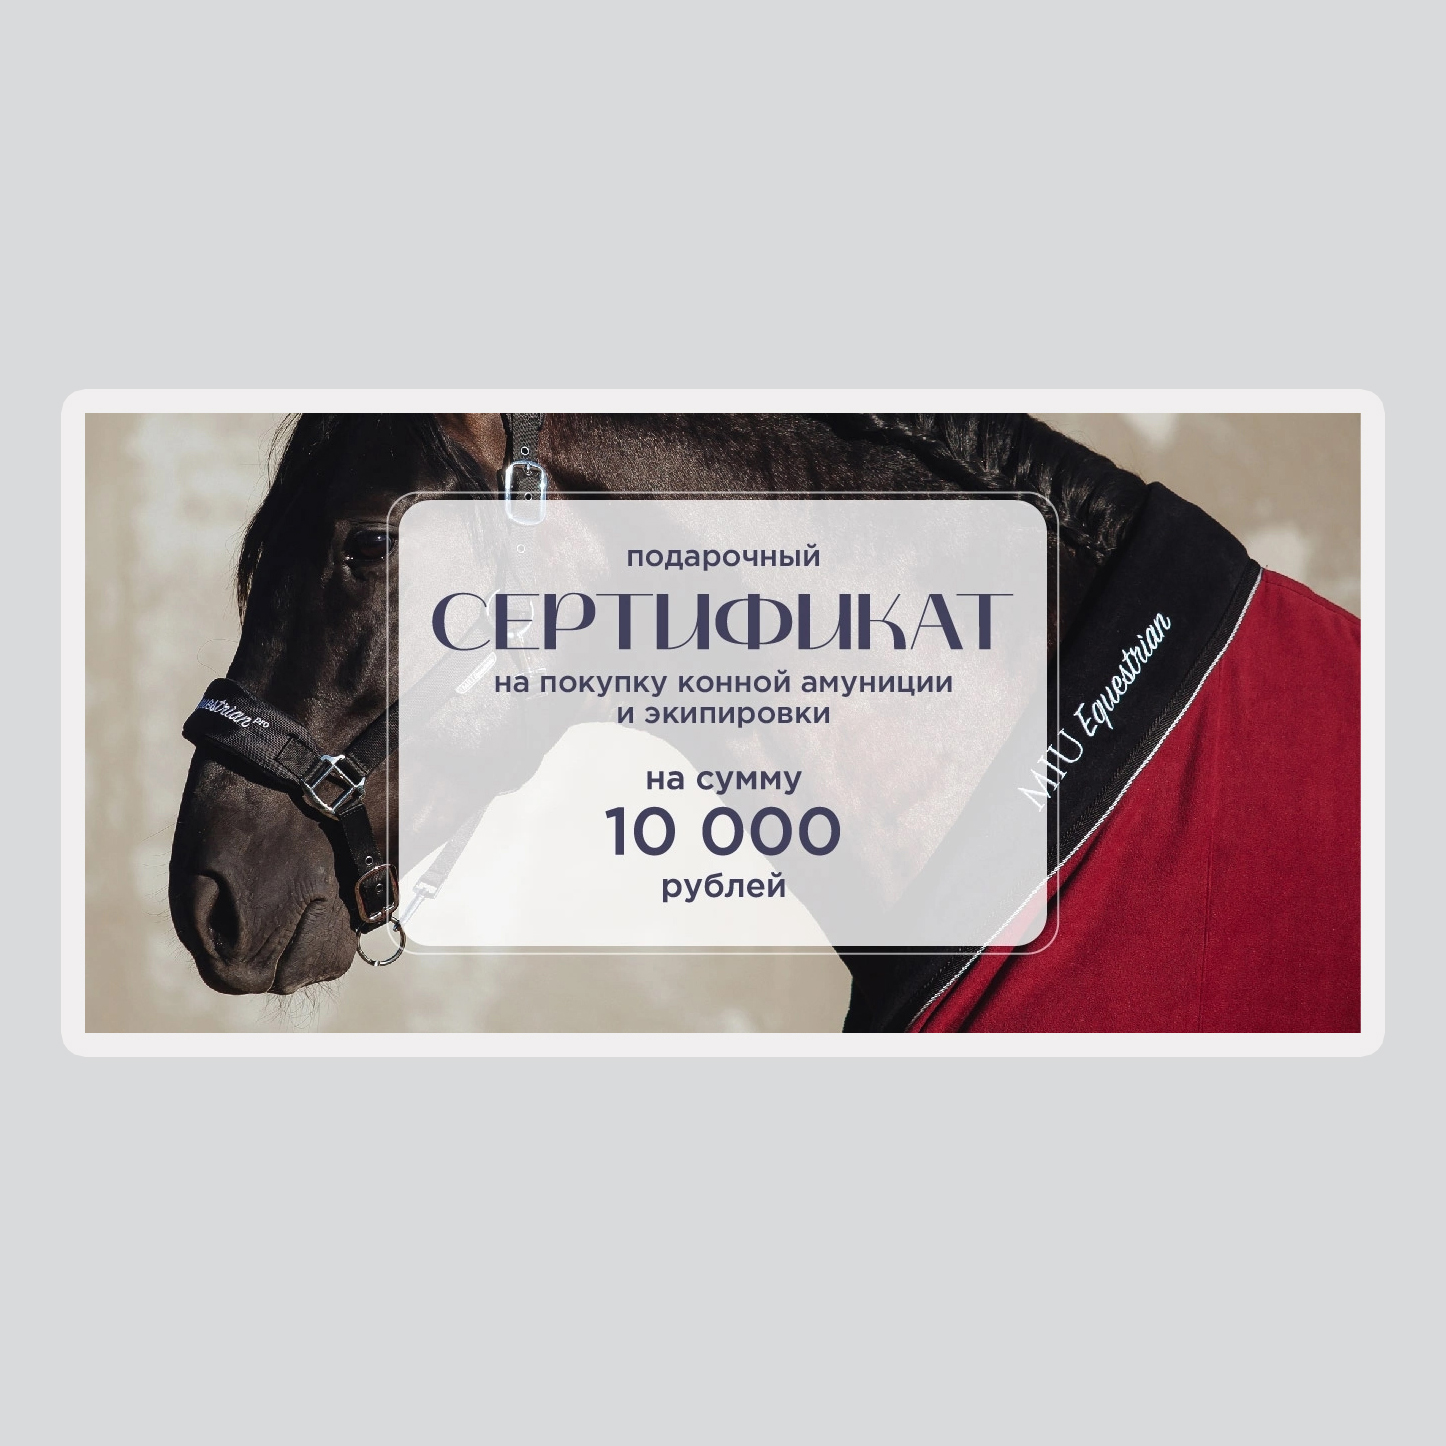 Подарочный сертификат на 10 000 рублей Первая Конная Мануфактура